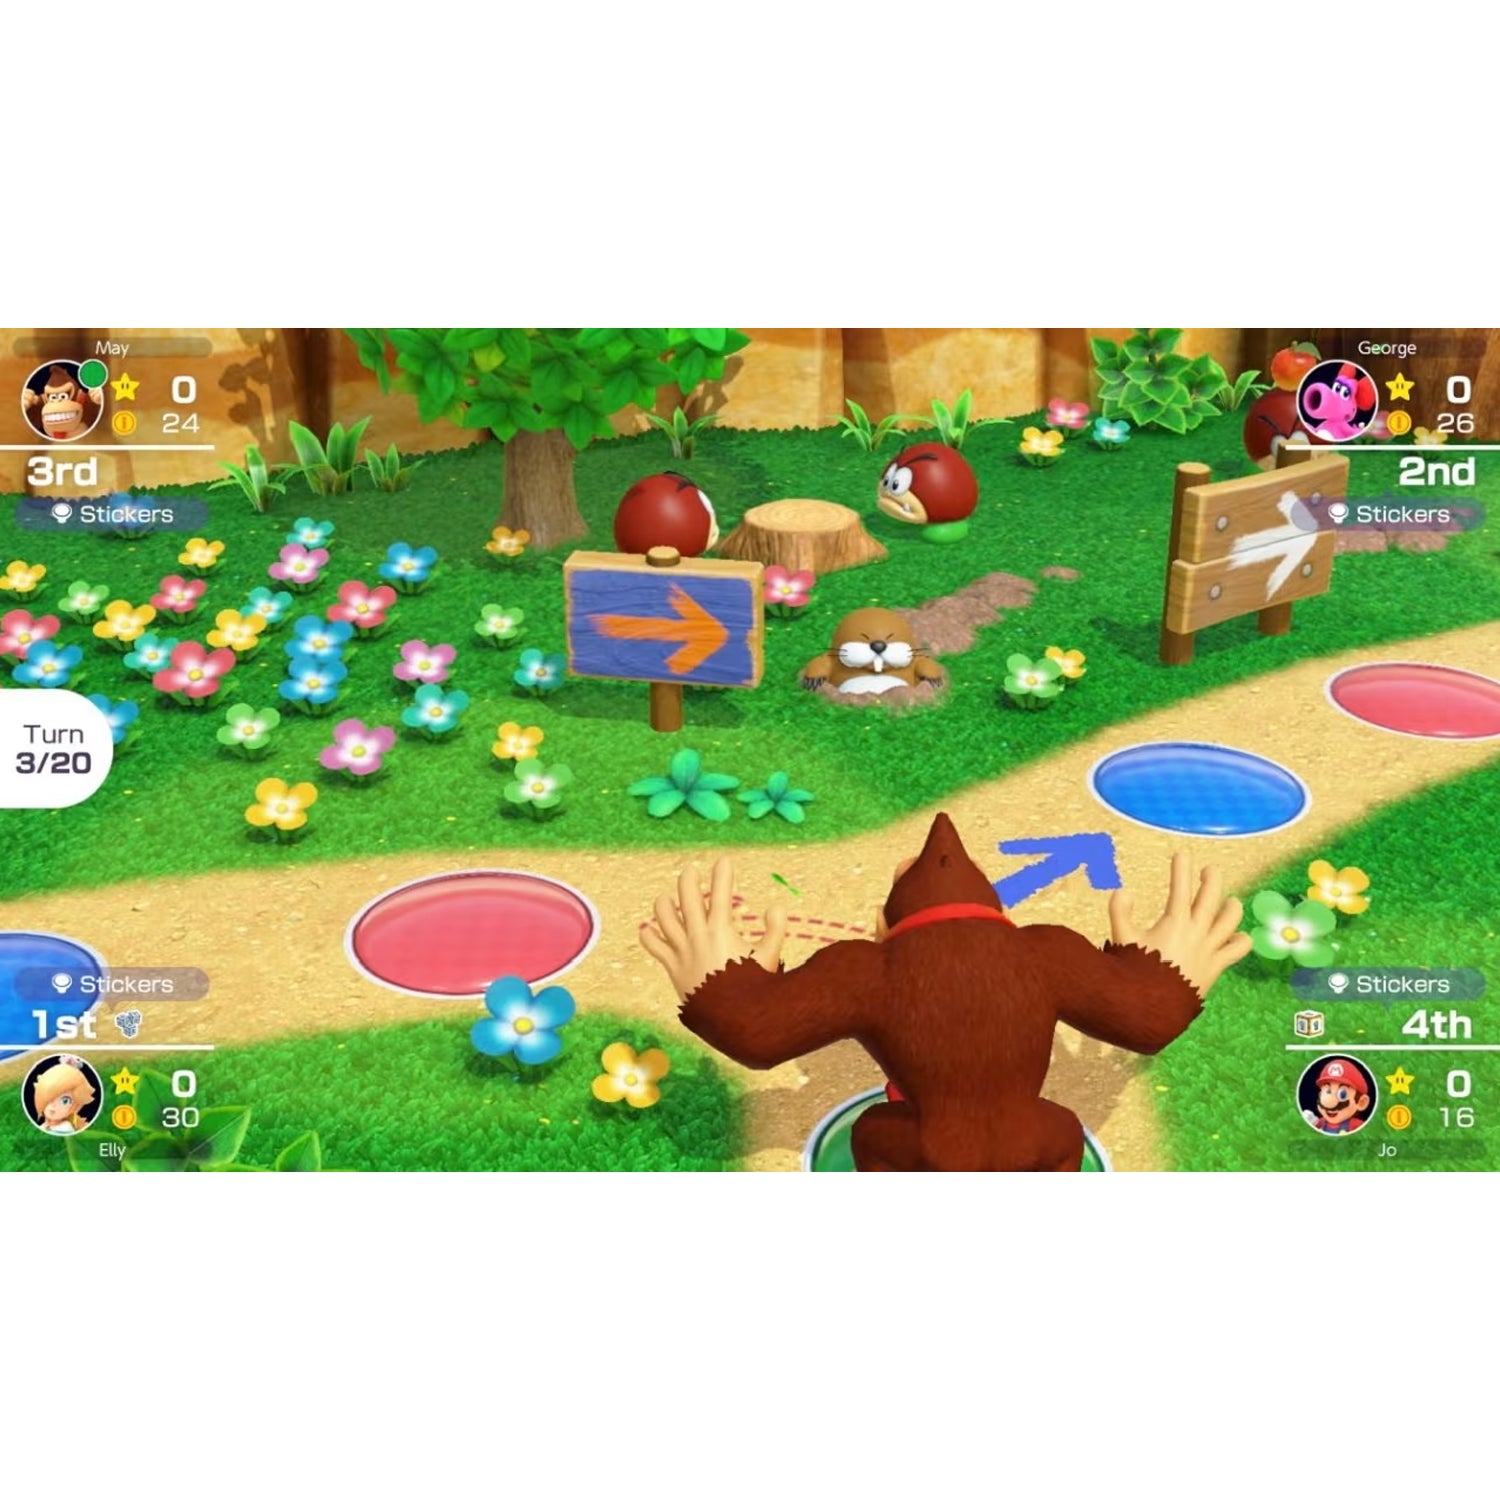 Nintendo Switch Super Mario Party + Joy-Con Bundle